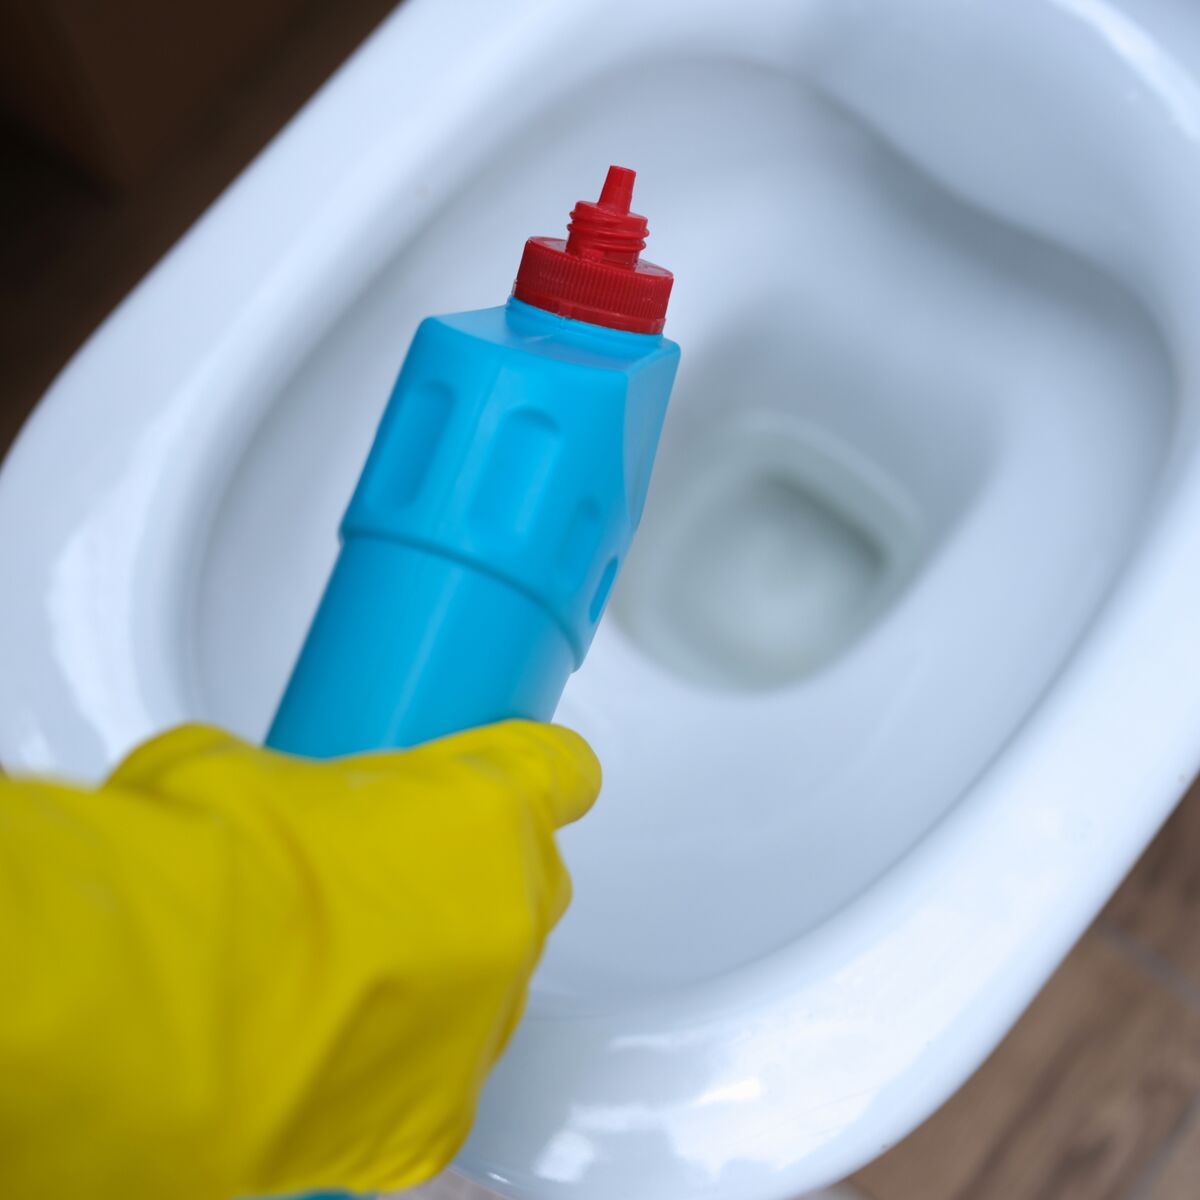 Acide chlorhydrique dans les WC : quelles précautions prendre ? : Femme  Actuelle Le MAG